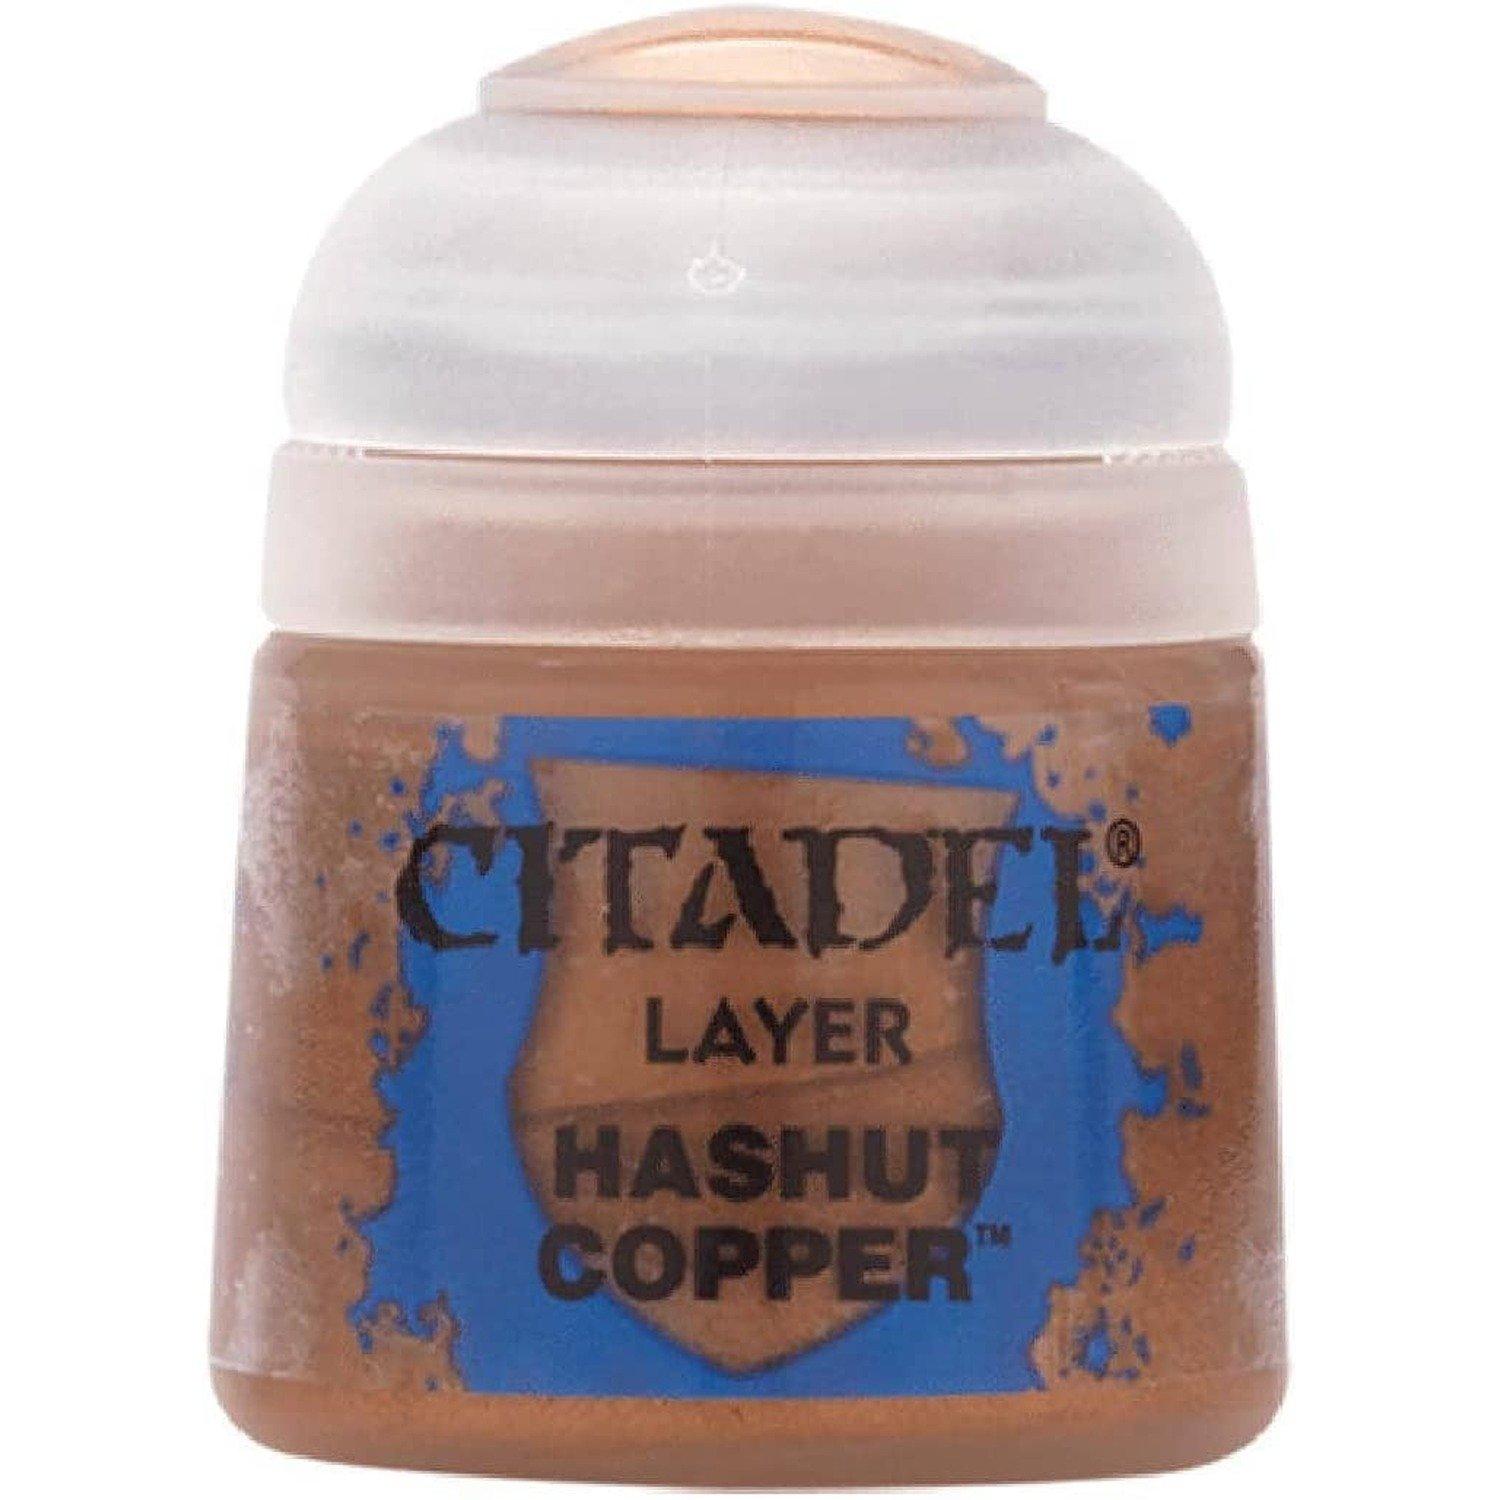 Hashut Copper (6-pack)